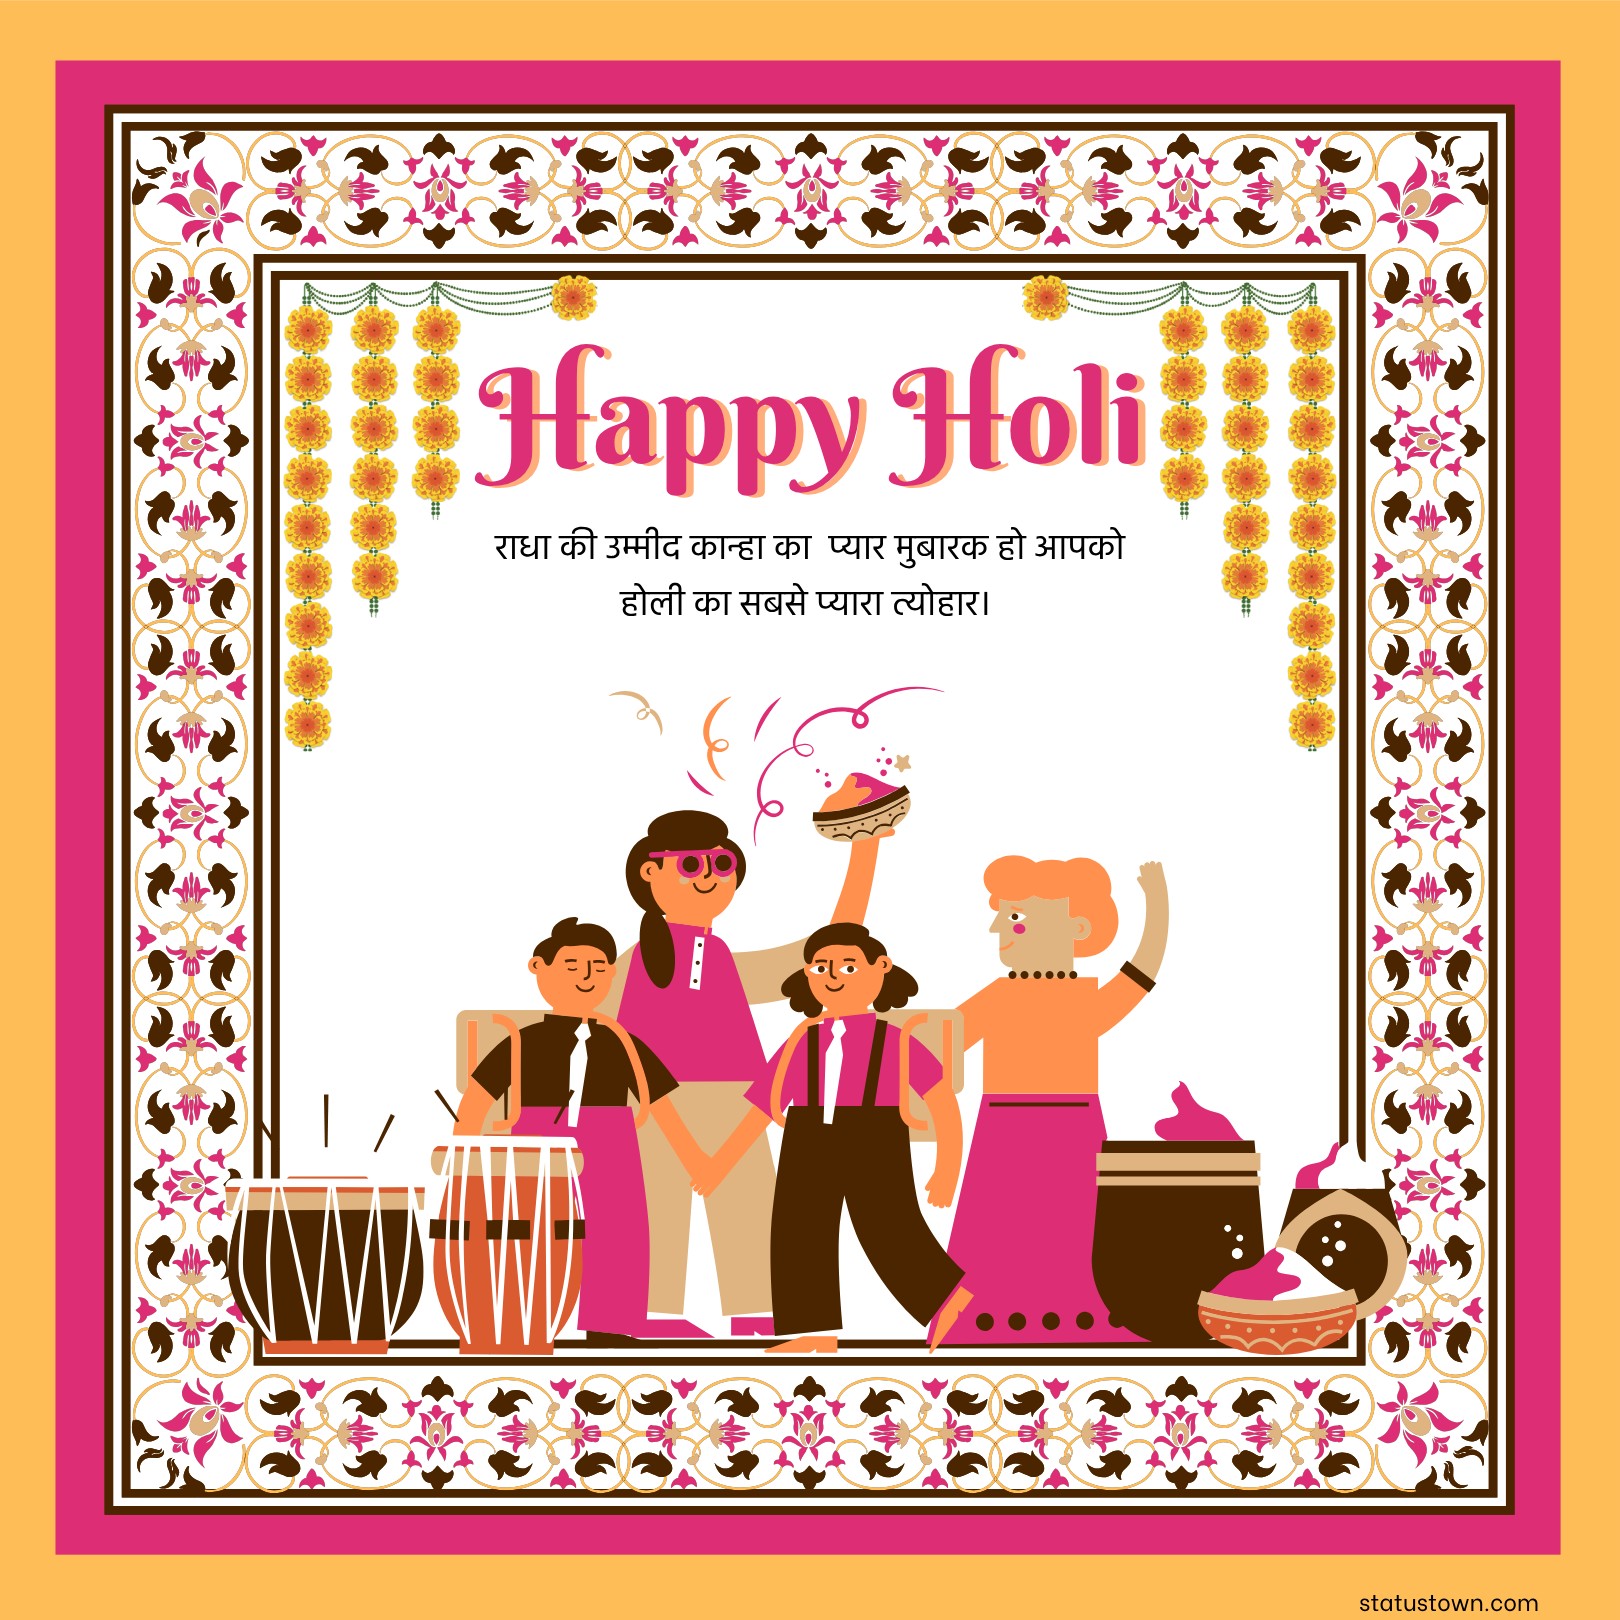 राधा की उम्मीद कान्हा का प्यार मुबारक हो आपको होली का सबसे प्यारा त्योहार। 
 - Holi Wishes in Hindi